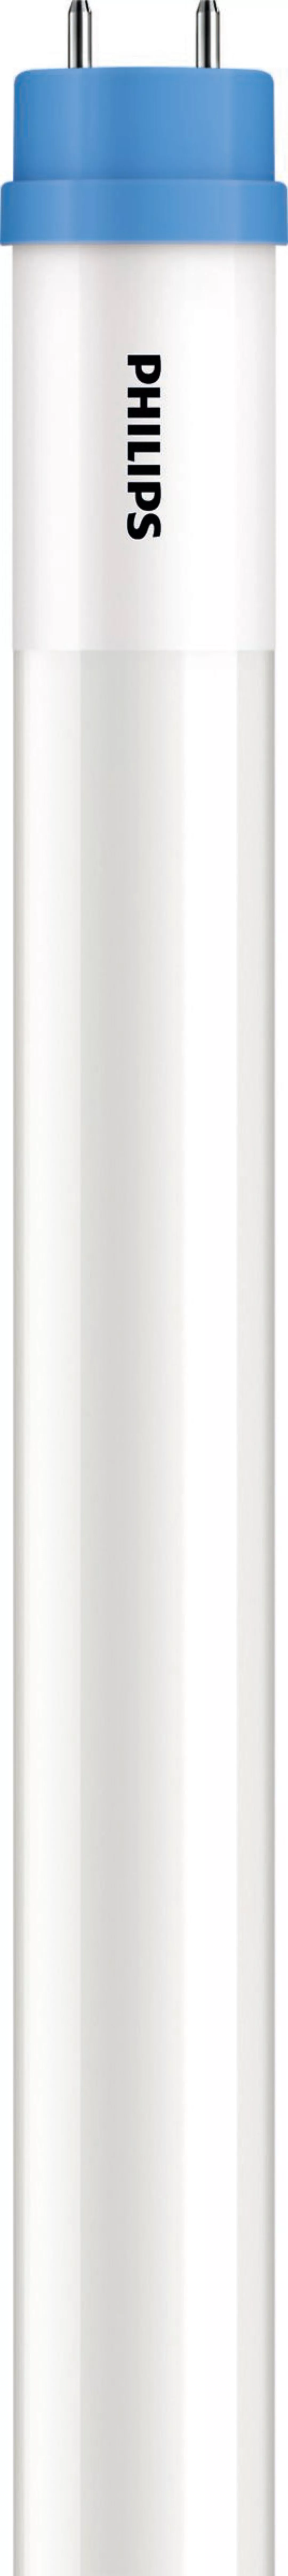 Philips Lighting LED-Tube T8 KVG/VVG G13, 865, 1500mm CoreProLED #45983000 günstig online kaufen